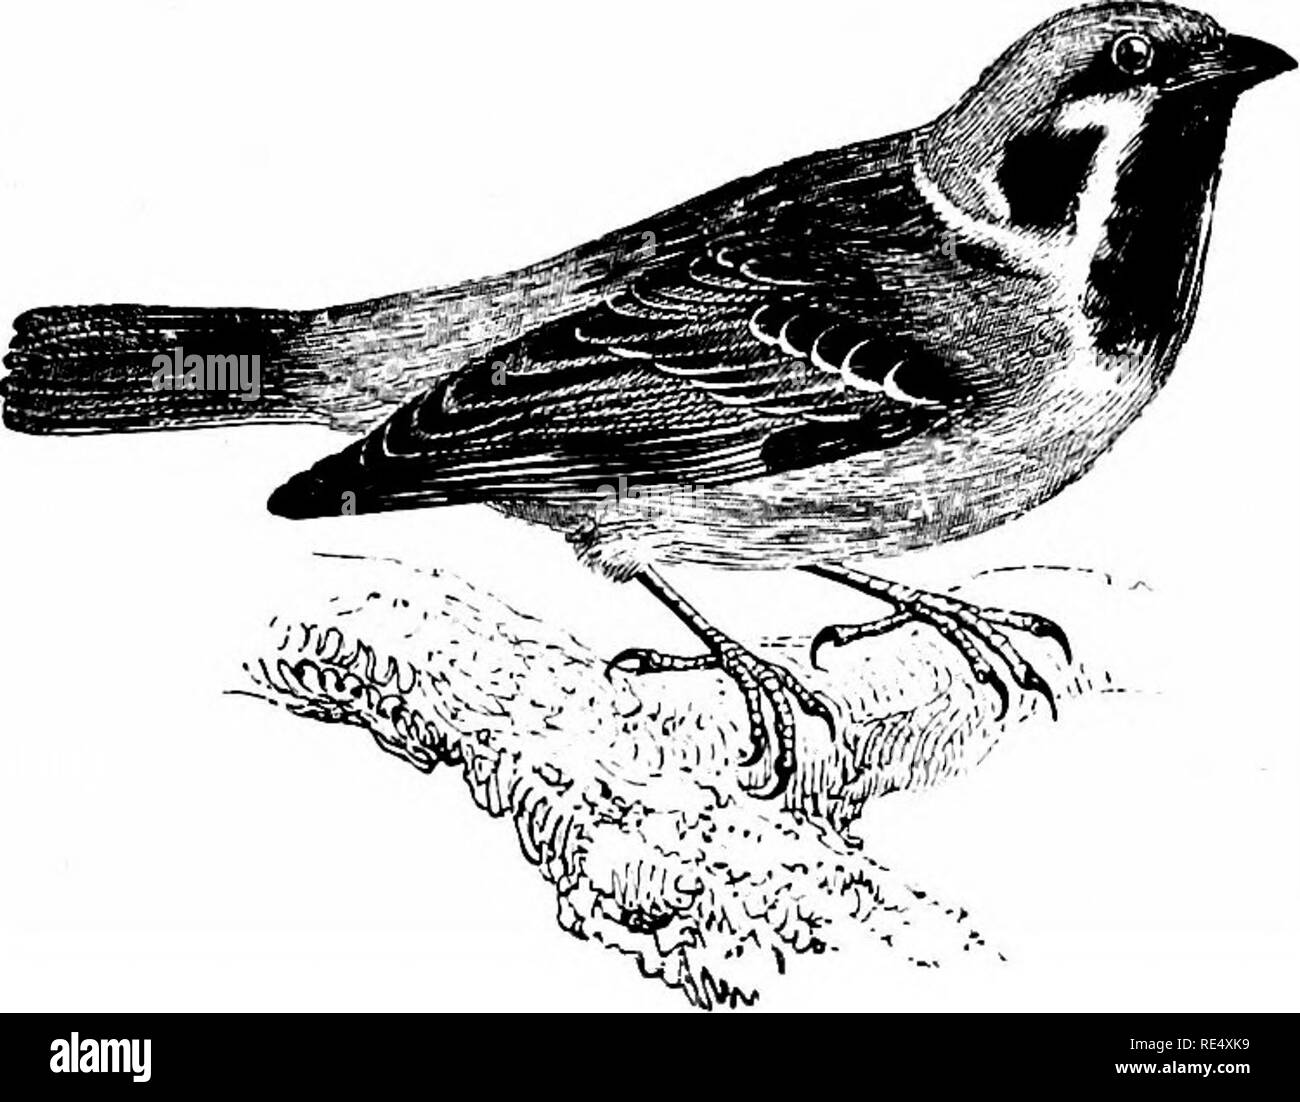 . Ein illustriertes Handbuch der britischen Vögeln. Vögel. FRINGILLIN ^.. Der Baum - Spatz. Passer montanus (Linnaeus). Die Tree-Sparrow ist seltener und mehr Lokale als die vorhergehenden Arten, aber es ist zweifellos ihr Angebot erweitert, nachdem vor kurzem - in der Äußeren Hebriden, einschließlich St. Kilda gefunden worden, und in Nordamerika Ronay, sowie in vielen anderen Orten, an denen es war nicht bekannt, in früheren Zeiten. Im Südwesten von England, ist noch un-common, und es ist nicht reichlich in Wales, obwohl es in Brecon Rassen; während es sehr lokalen in Lancashire und Cumberland. Es ist wahrscheinlich reichlich in Cambridgeshire Stockfoto